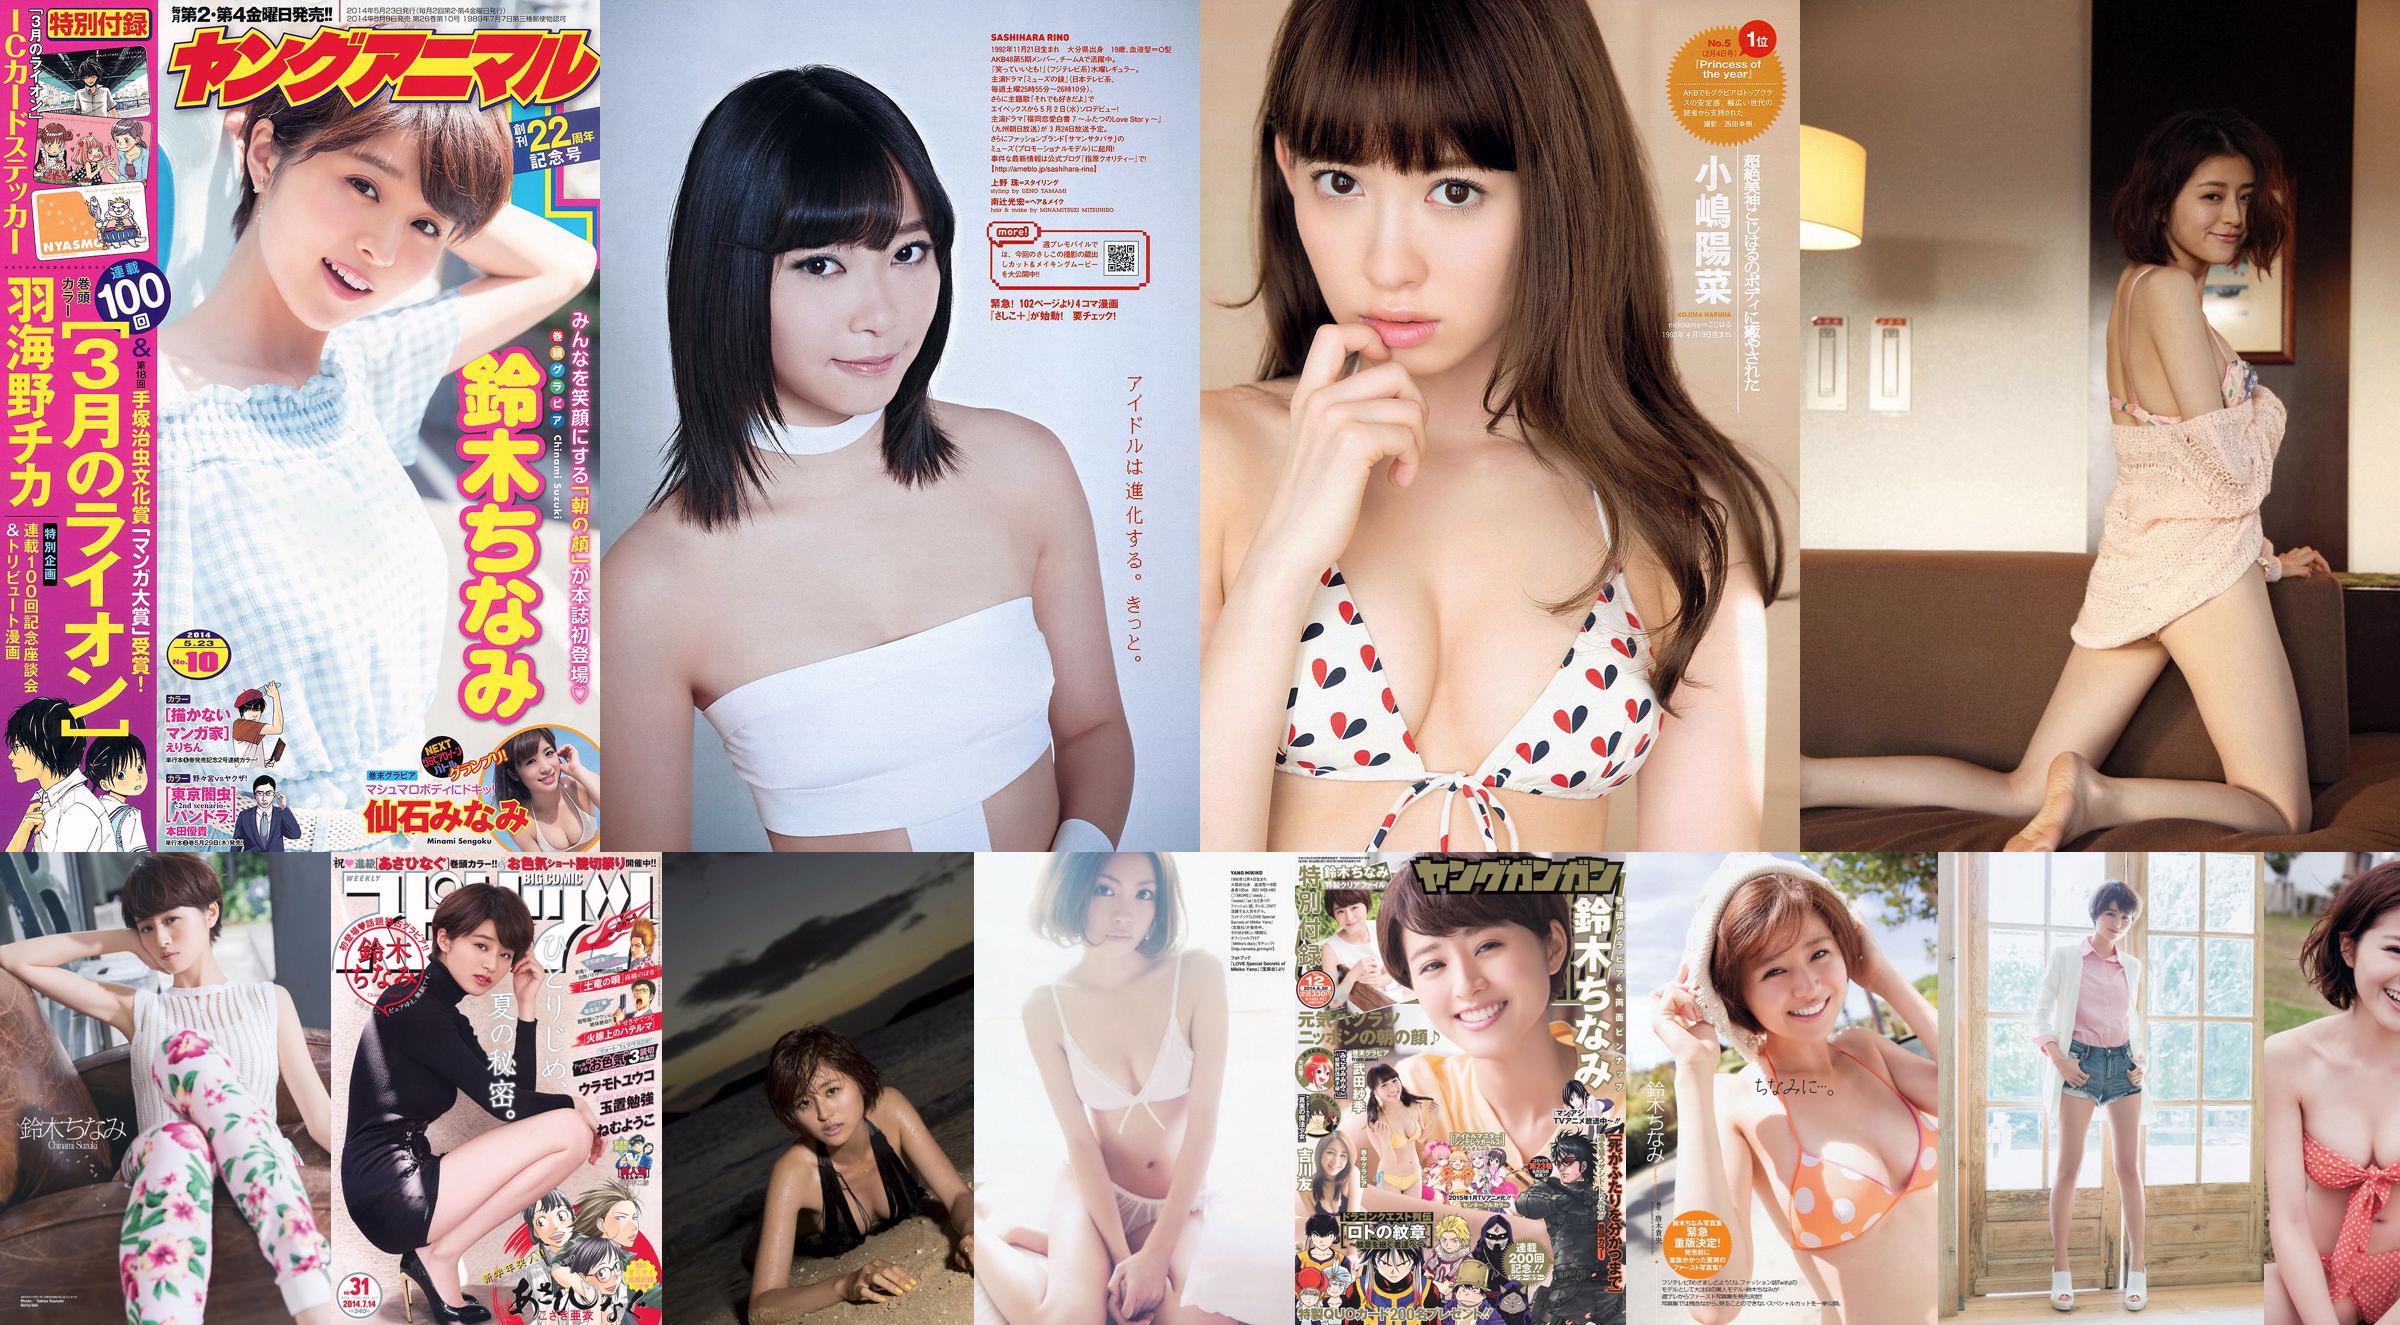 [Wöchentliche große Comic-Spirituosen] Chinami Suzuki 2014 Nr. 31 Foto No.1cc4d3 Seite 1